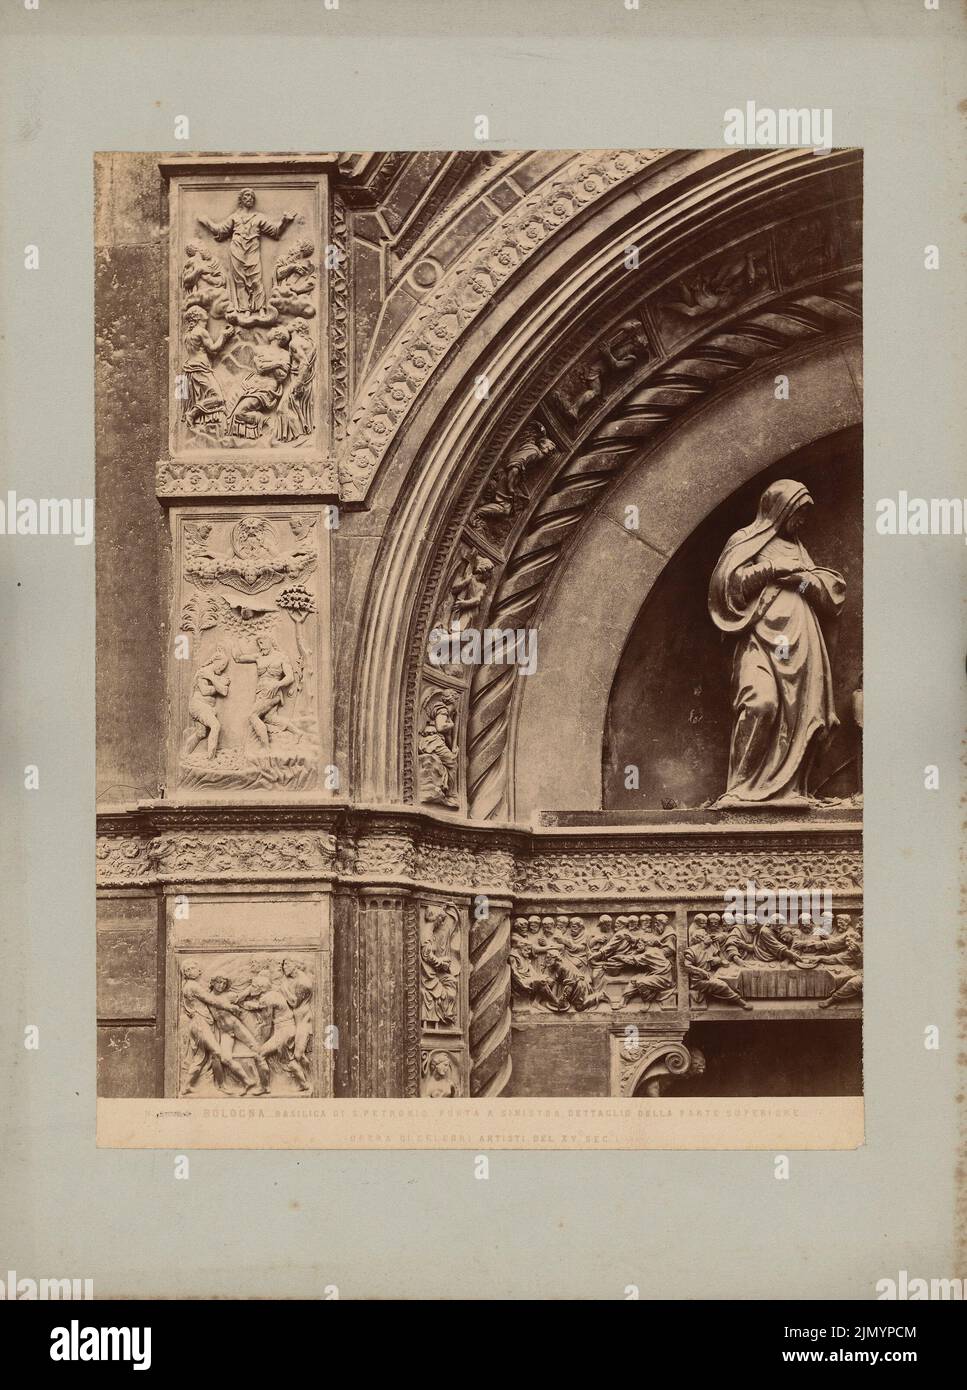 Alinari, Basilica di S. Petronio, Bologna (senza dat.): Particolare del sovraporto del portale sinistro. Foto su cartone, 32,4 x 24,1 cm (inclusi i bordi di scansione) Foto Stock